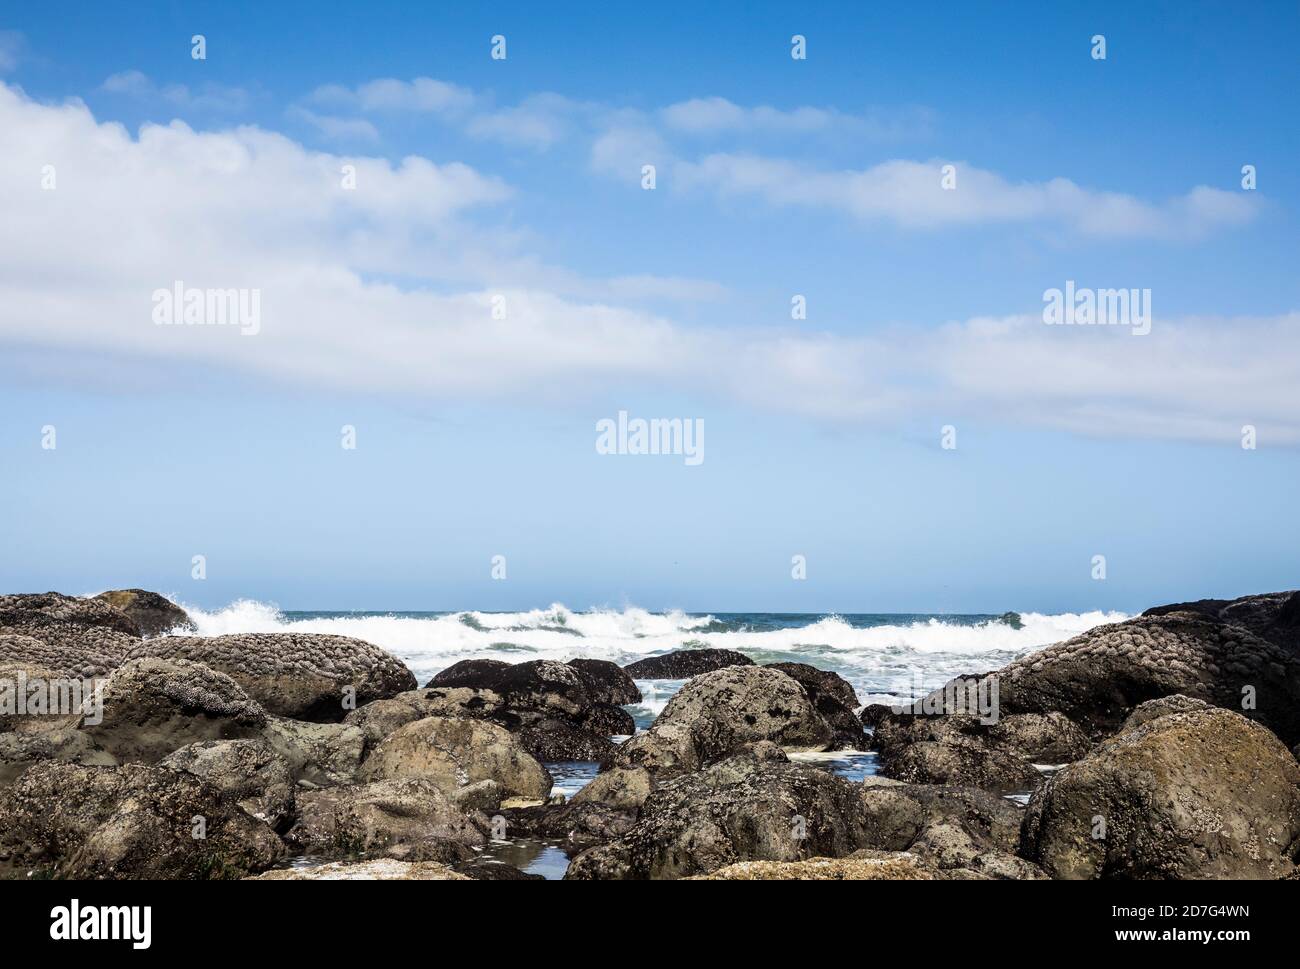 Un littoral rocheux et des vagues se déroulant à la 2ème plage, Olympic Coast National Marine Sanctuary / National Park, Washington, Etats-Unis. Banque D'Images